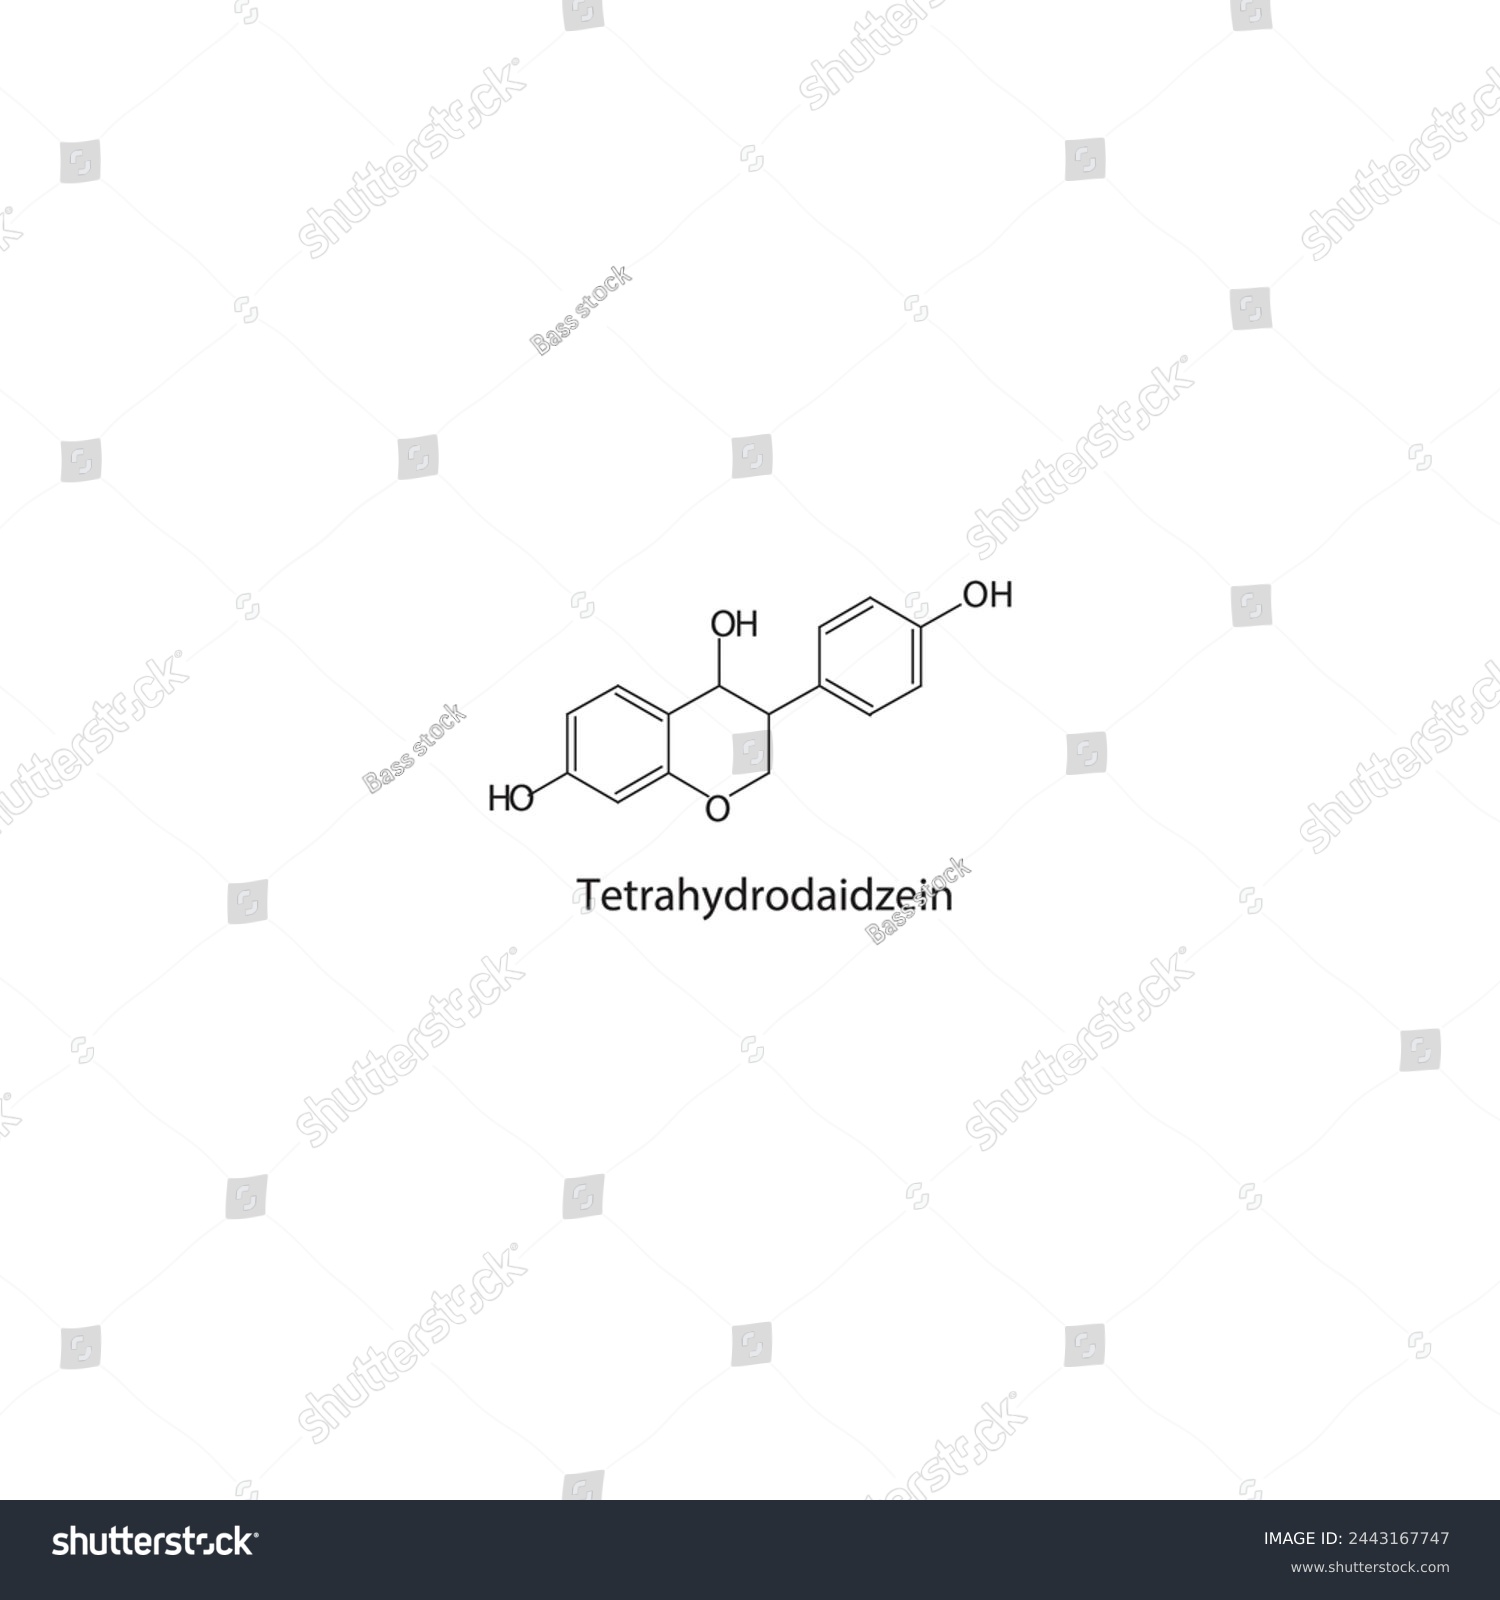 SVG of Tetrahydrodaidzein skeletal structure diagram.Isoflavanone compound molecule scientific illustration on white background. svg